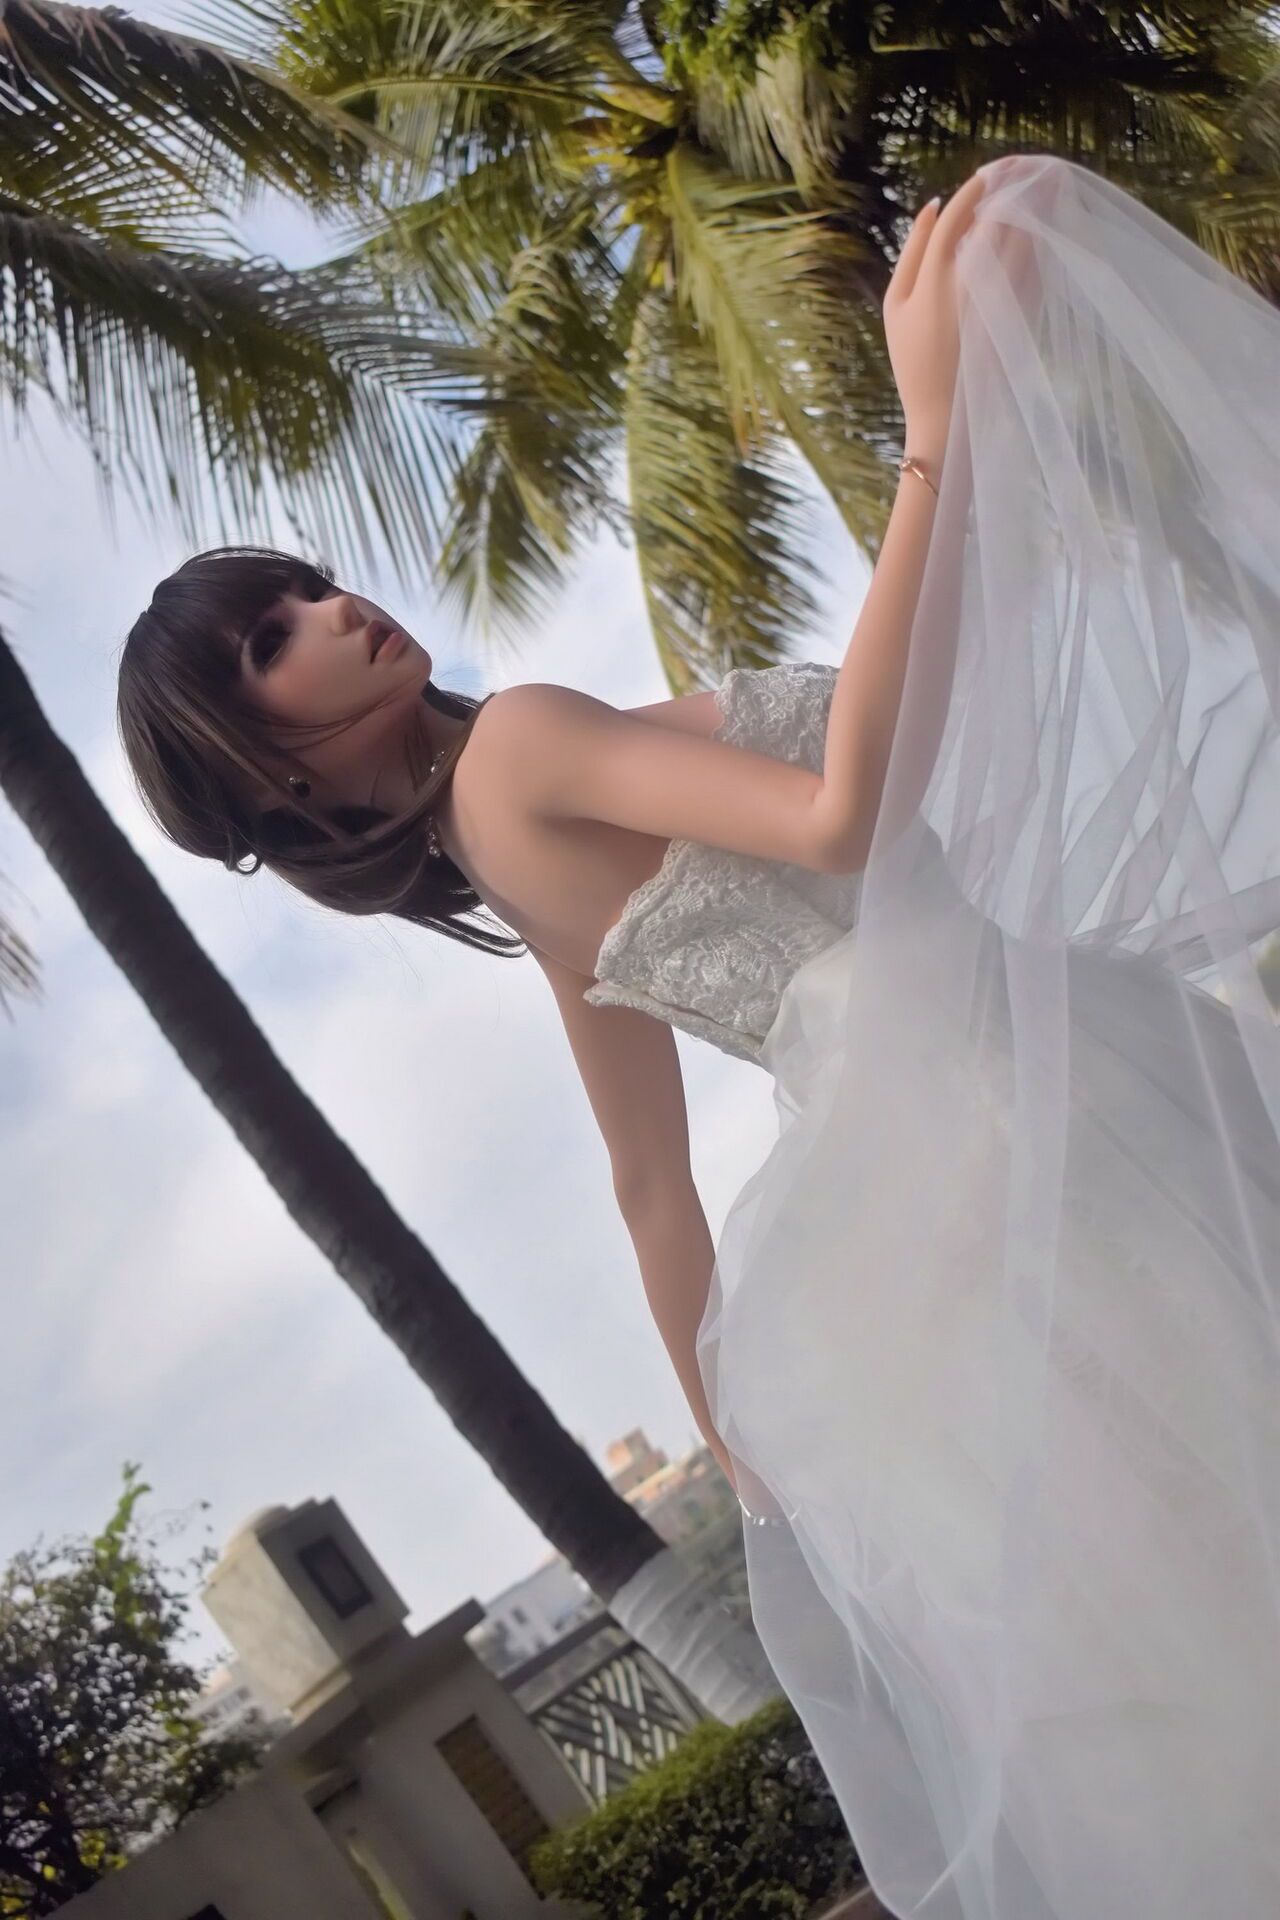 150CM HB031 Kurai Sakura-Bride in bud, to be married! by QIN 10